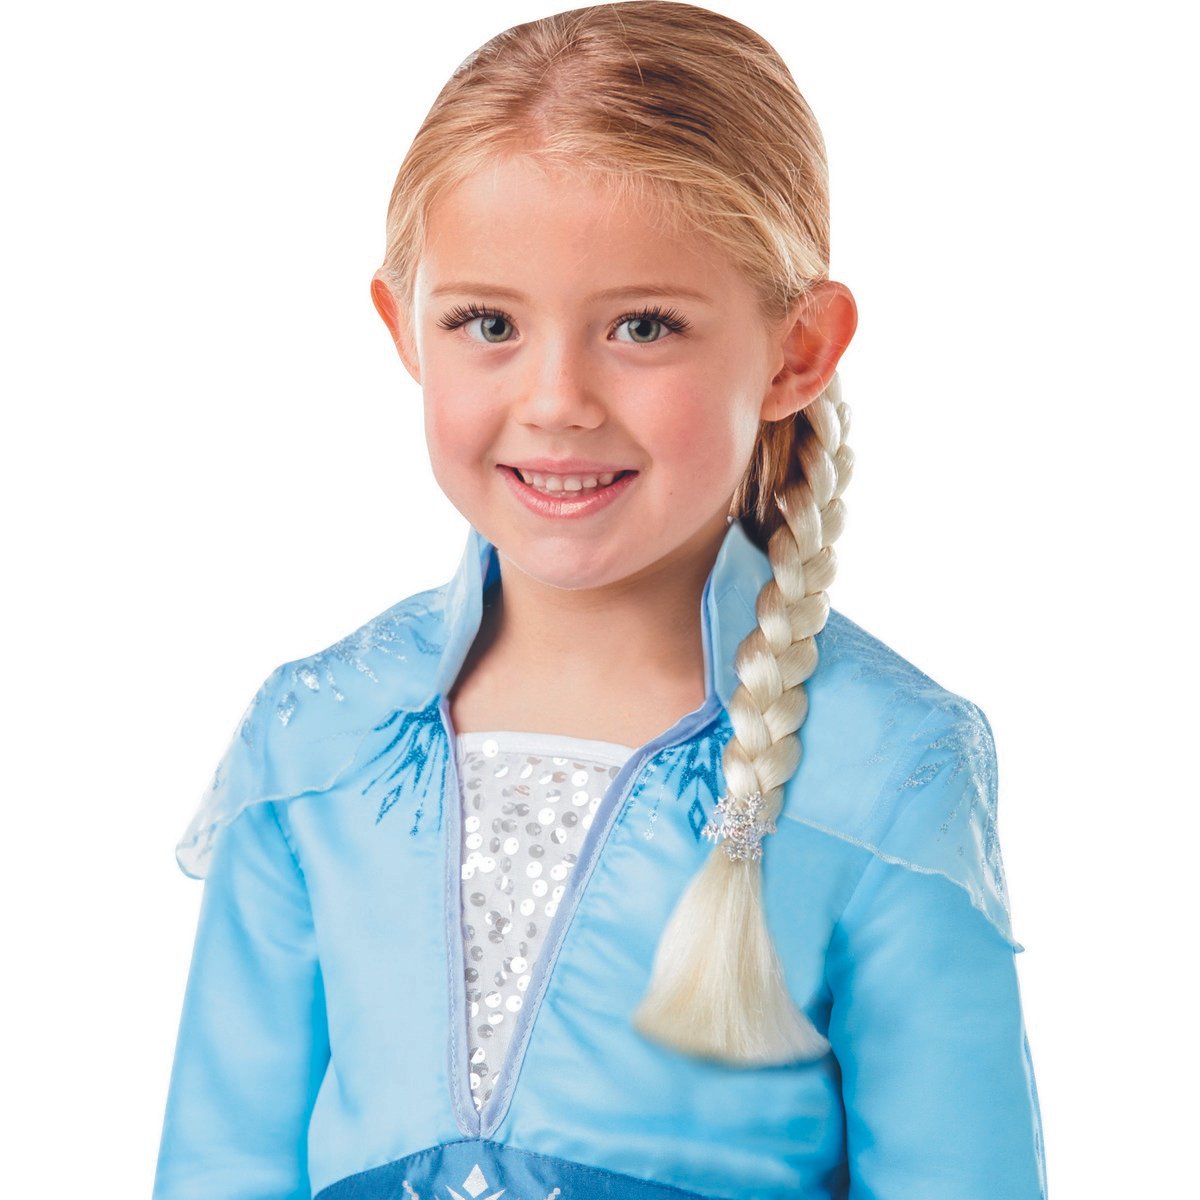 Déguisement classique Elsa La Reine des Neiges 3-4 ans - La Grande Récré